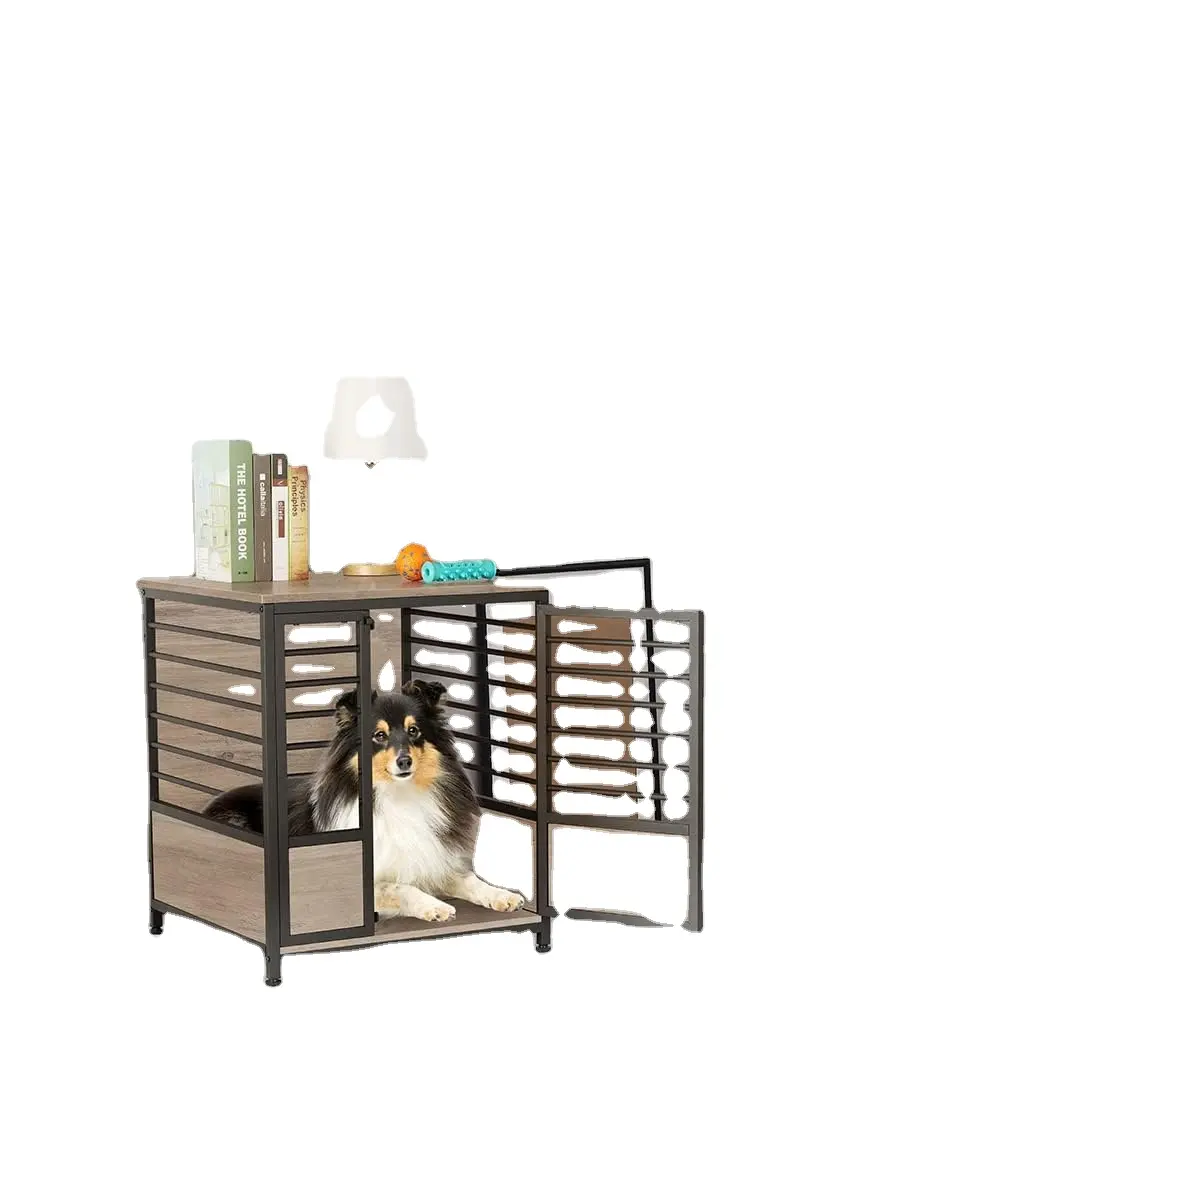 木製の重い犬ケージサイドテーブル、屋内犬小屋、装飾的なスタイルの鋼管構造ペットボックスハウス